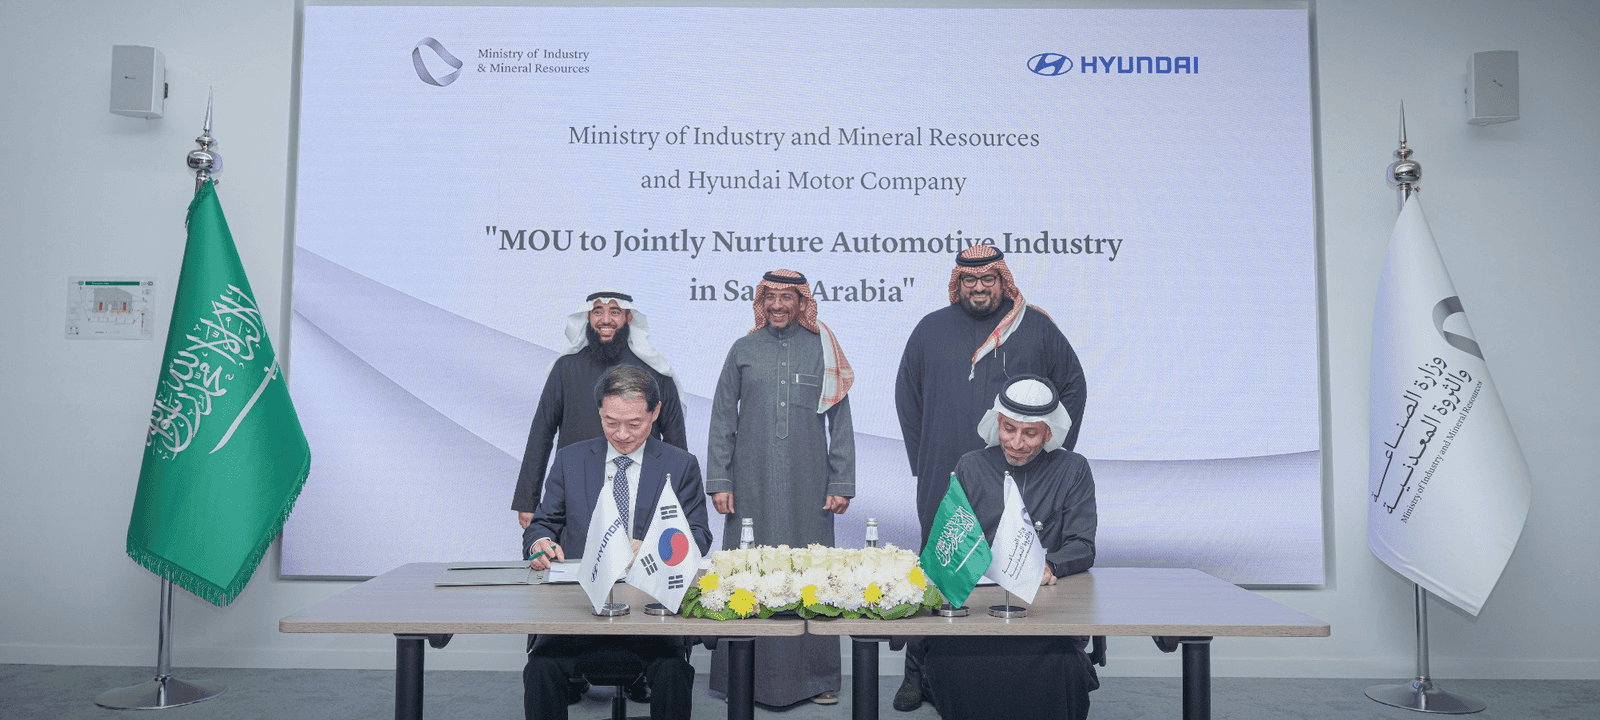 السعودية توقع مذكرة تفاهم مع "هيونداي" لتعزيز صناعة السيارات